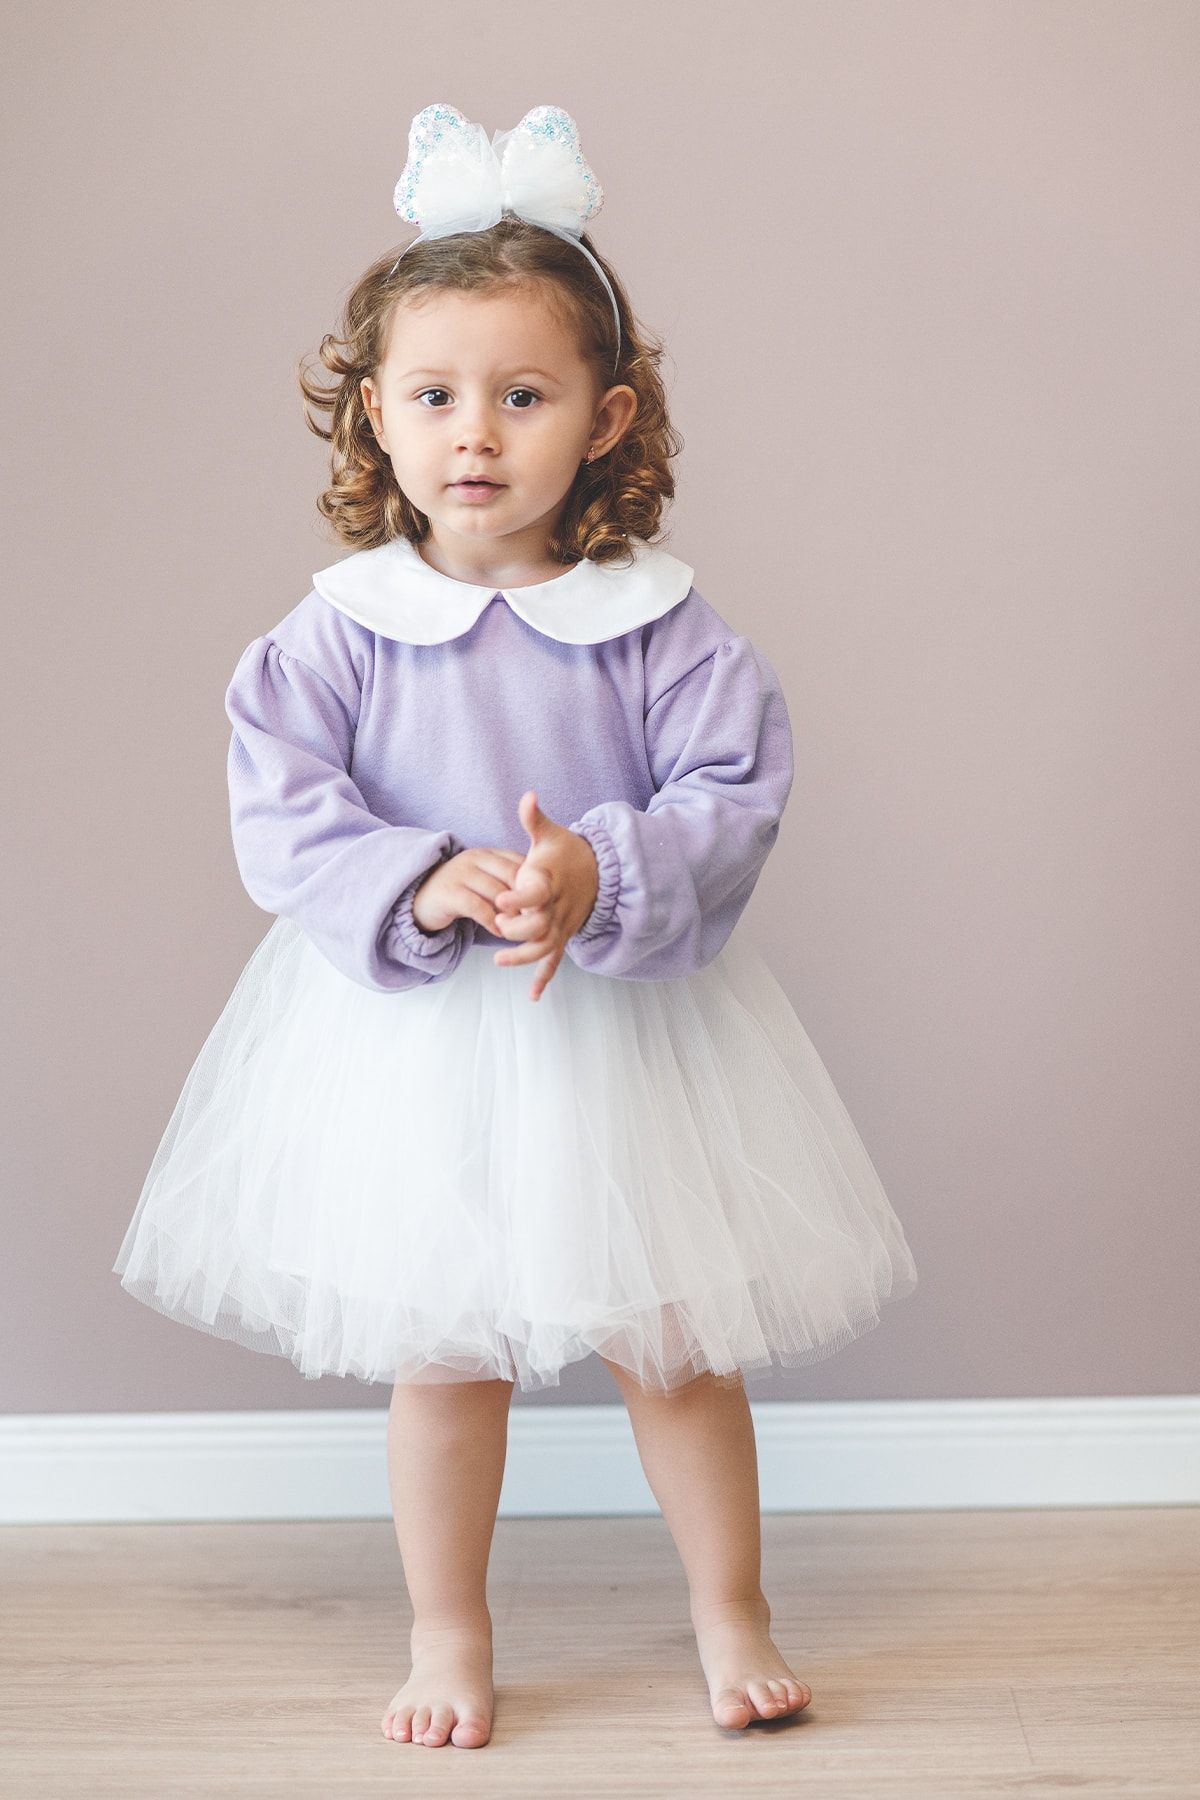 Banamio Soft Purple Üç Kat Tüllü Astarlı Bebek/çocuk Elbise (LİLA)